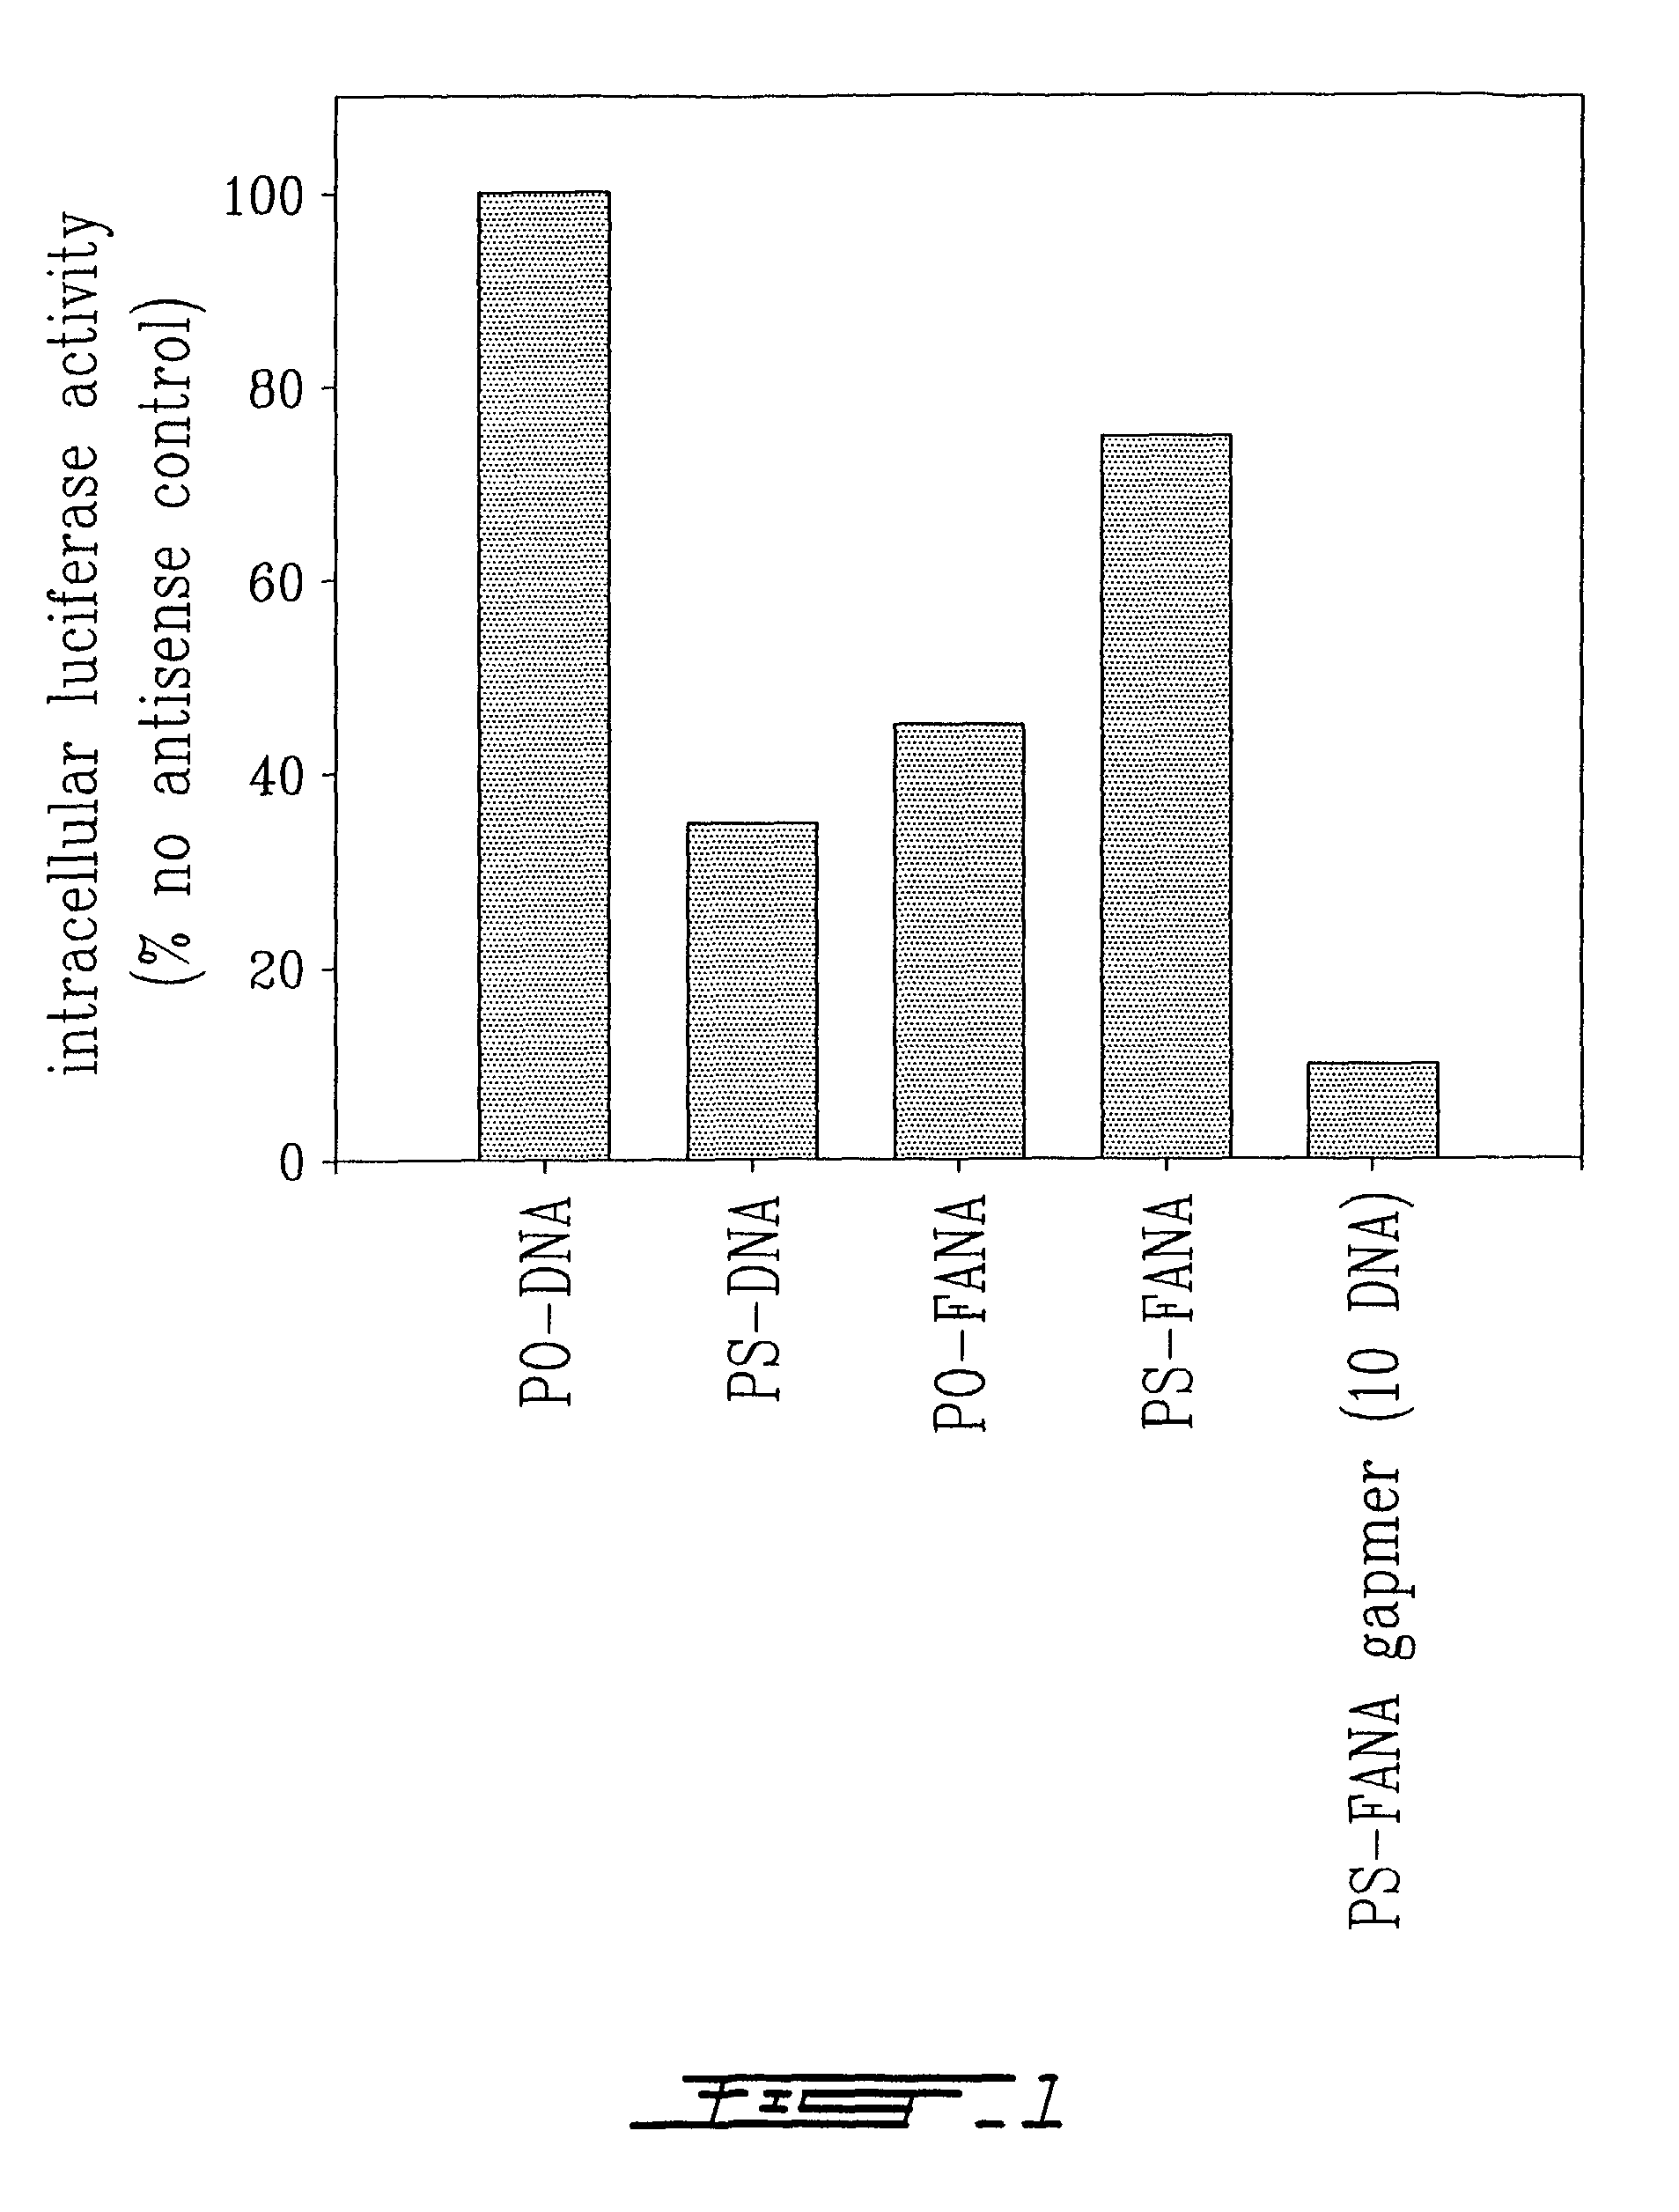 Chimeric antisense oligonucleotides of arabinofuranose analogue and deoxyribose nucleotides